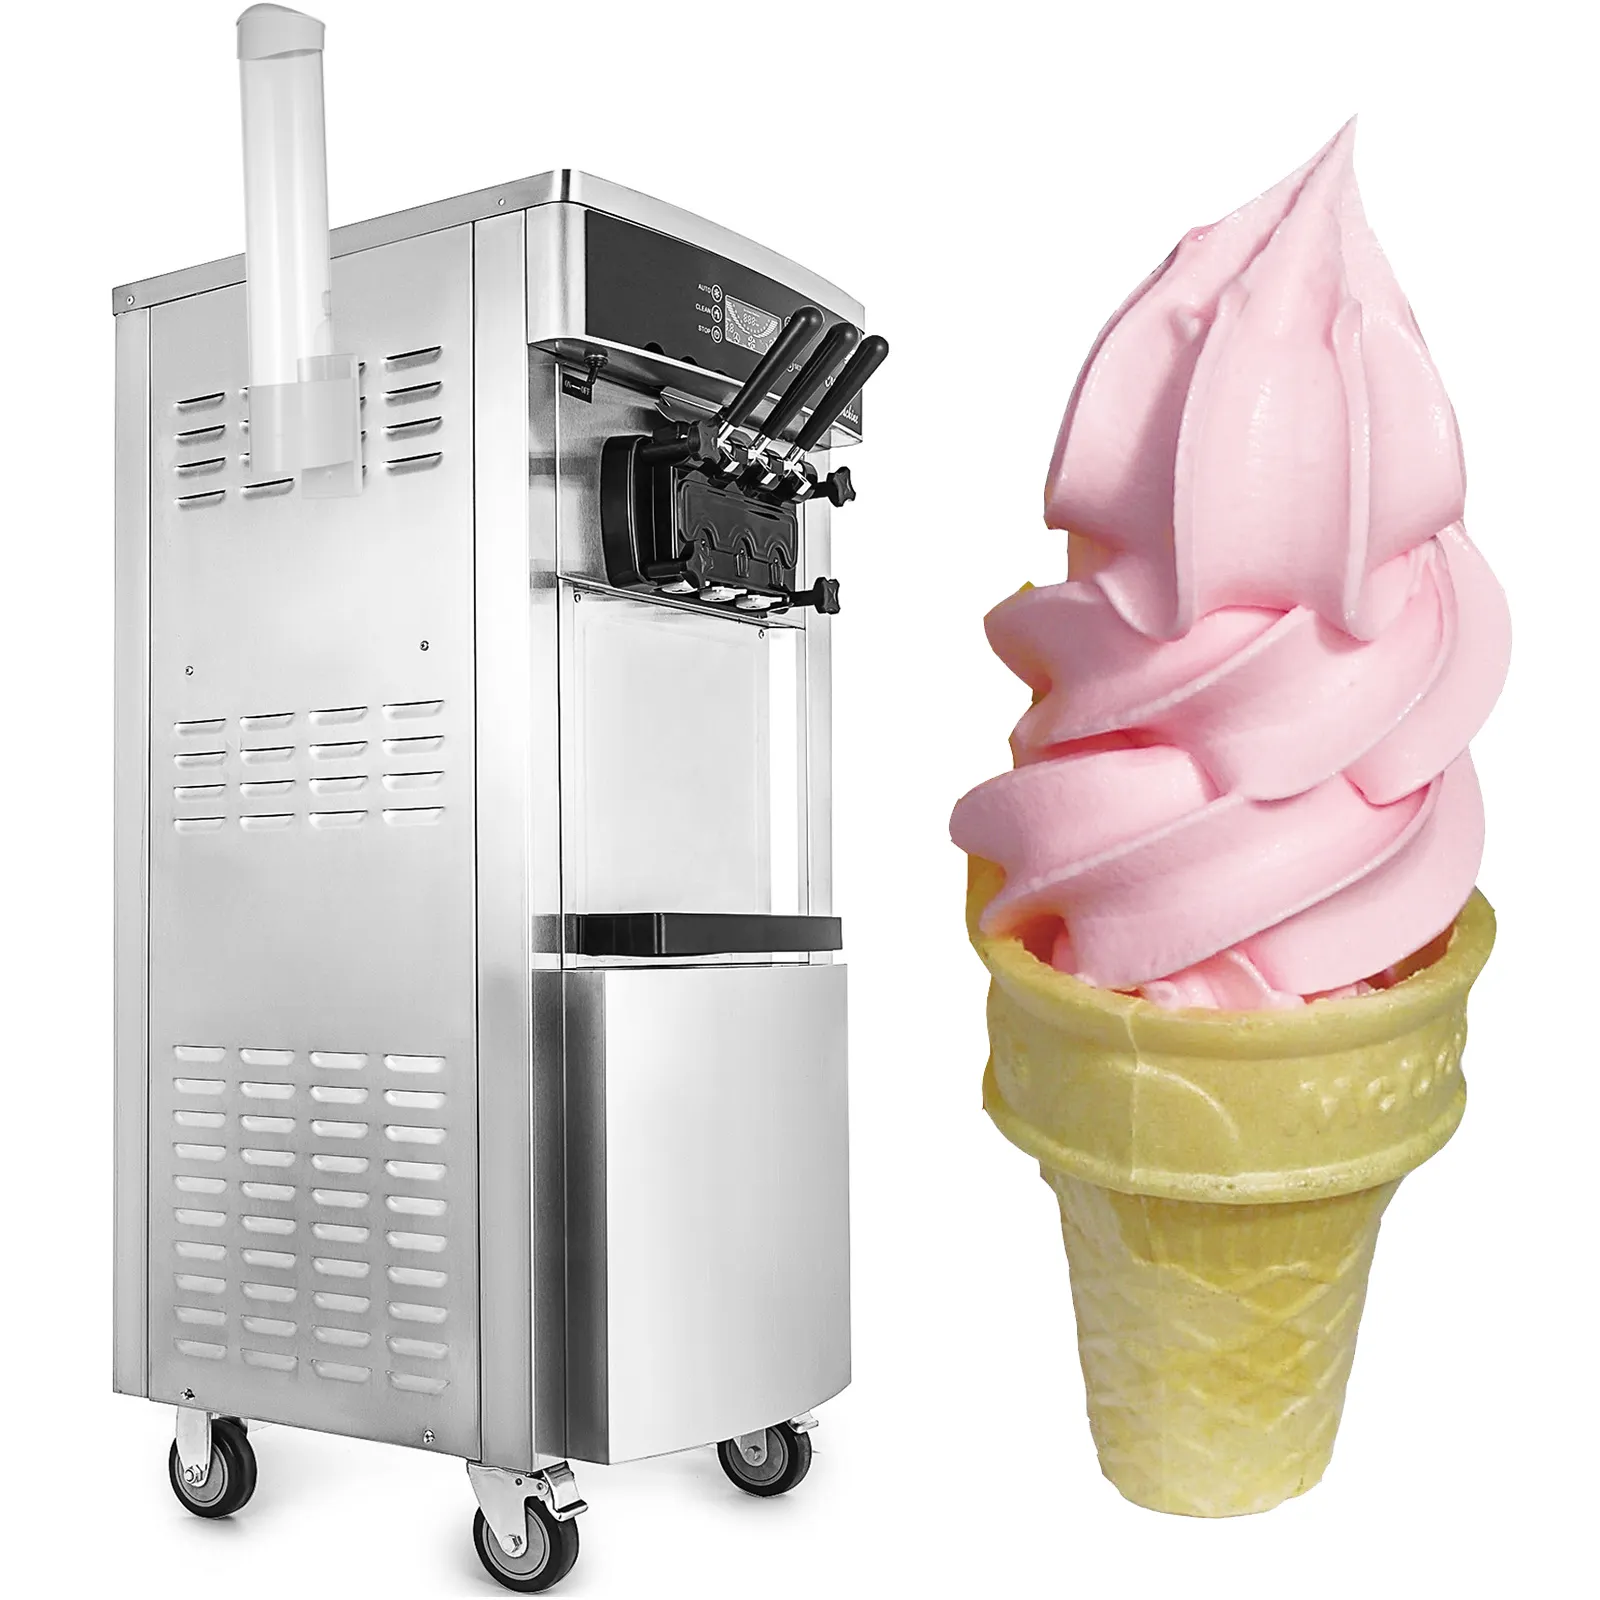 เครื่องไอศกรีมนุ่มแบบพกพาเชิงพาณิชย์ YKF-8228H พร้อมเครื่องทำไอศกรีมแบบยืน2 + 1รสชาติ